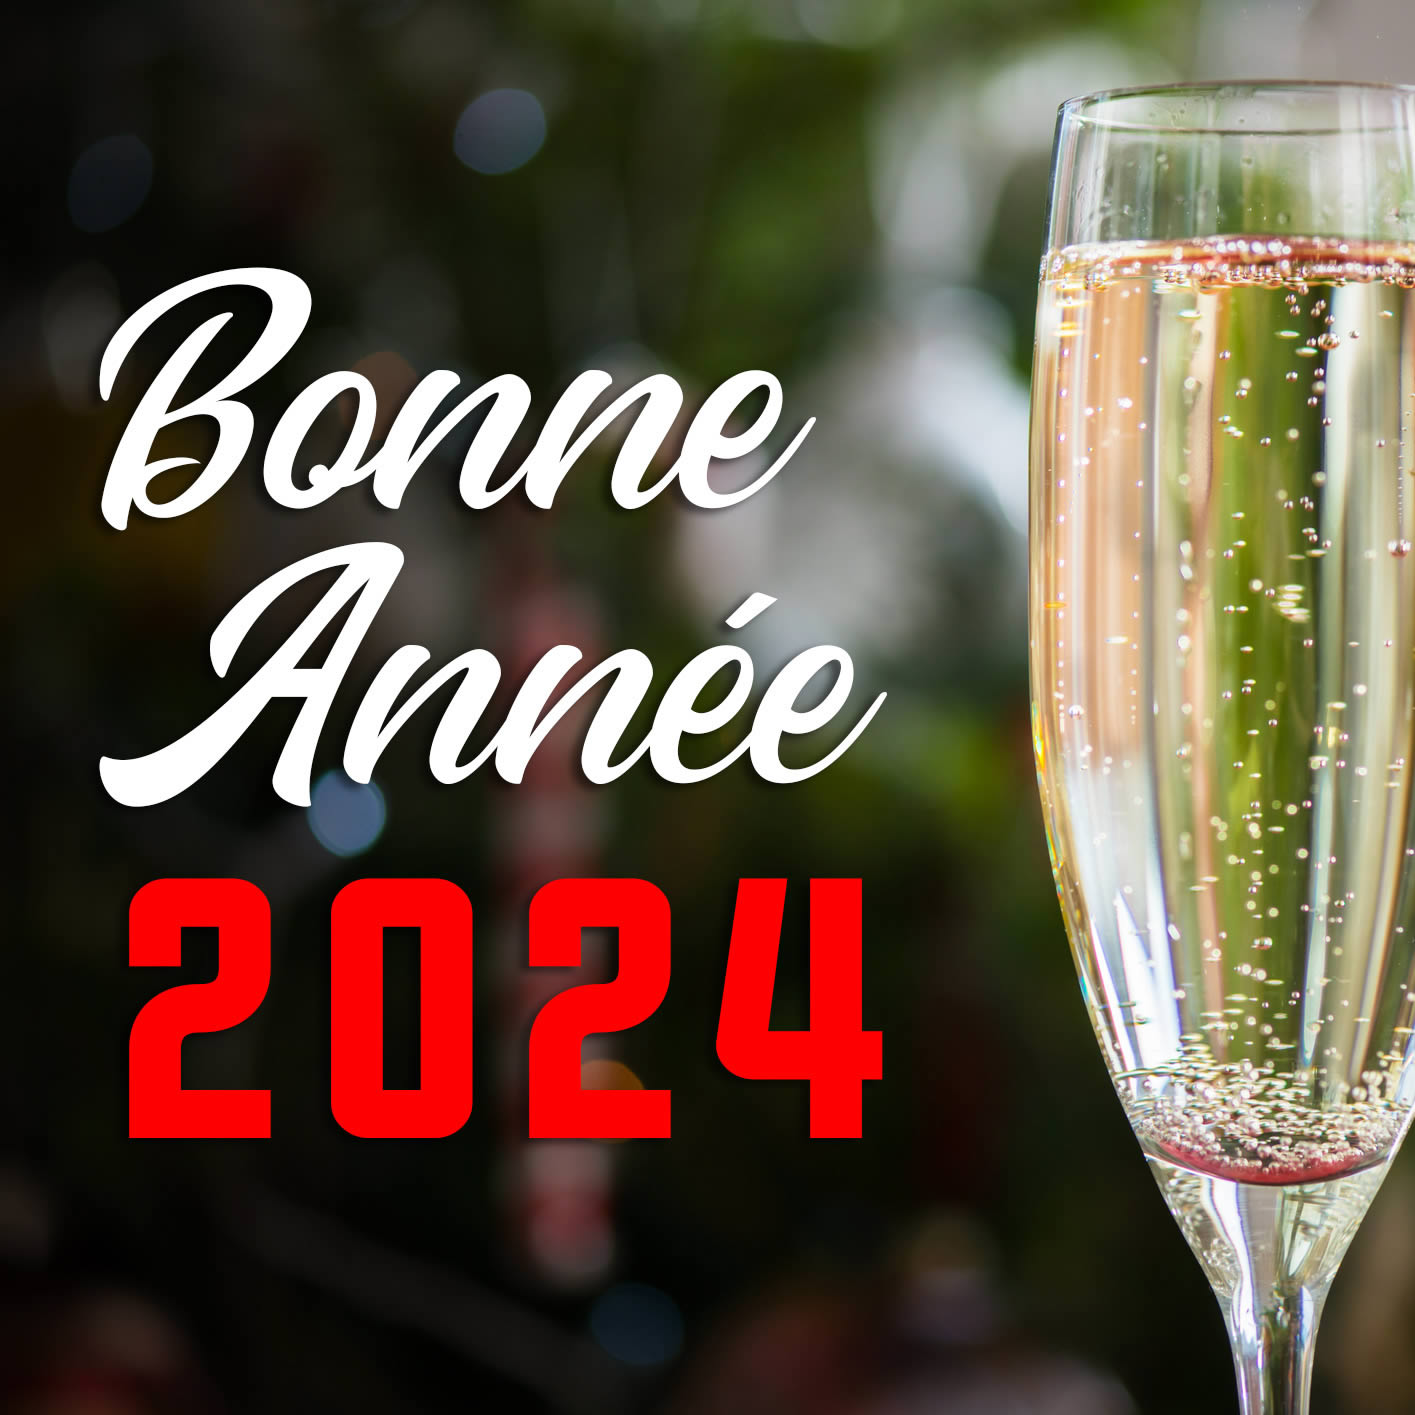 Image de voeux de bonne année avec verre pour porter un toast à la nouvelle année 2024